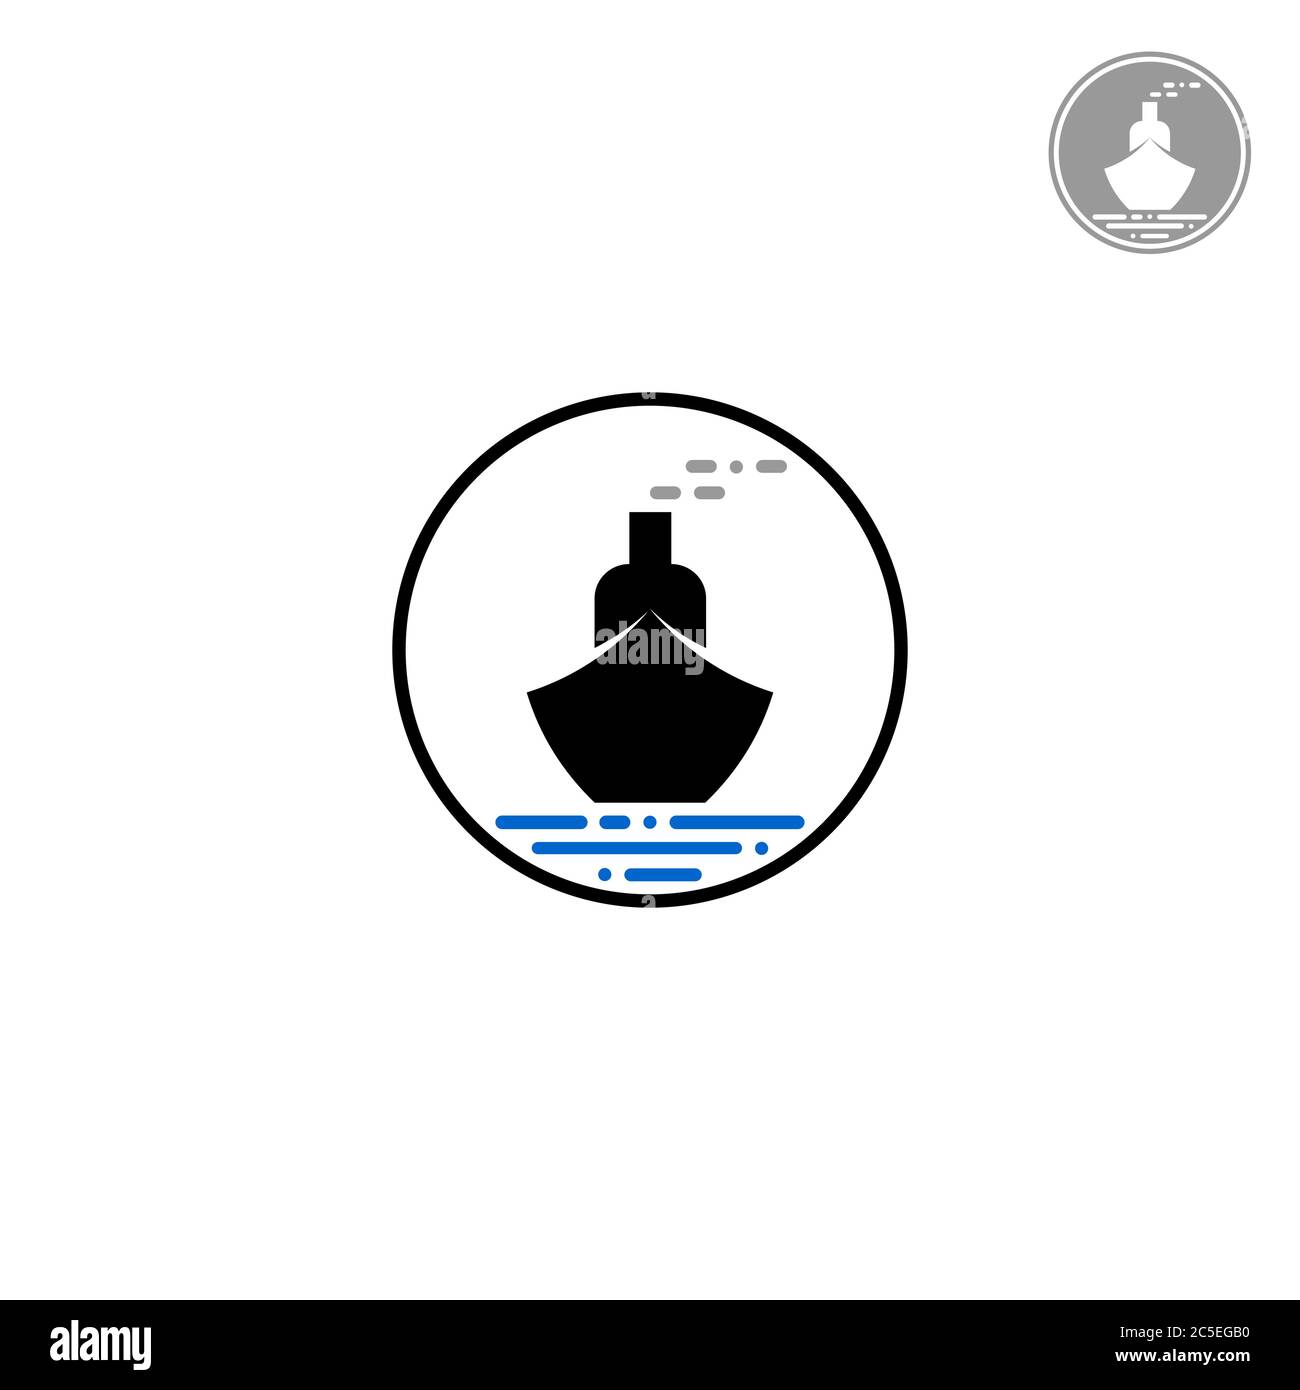 Modello del logo della nave, concetti di design della silhouette e linee tratteggiate, isolati su sfondo bianco. Illustrazione Vettoriale